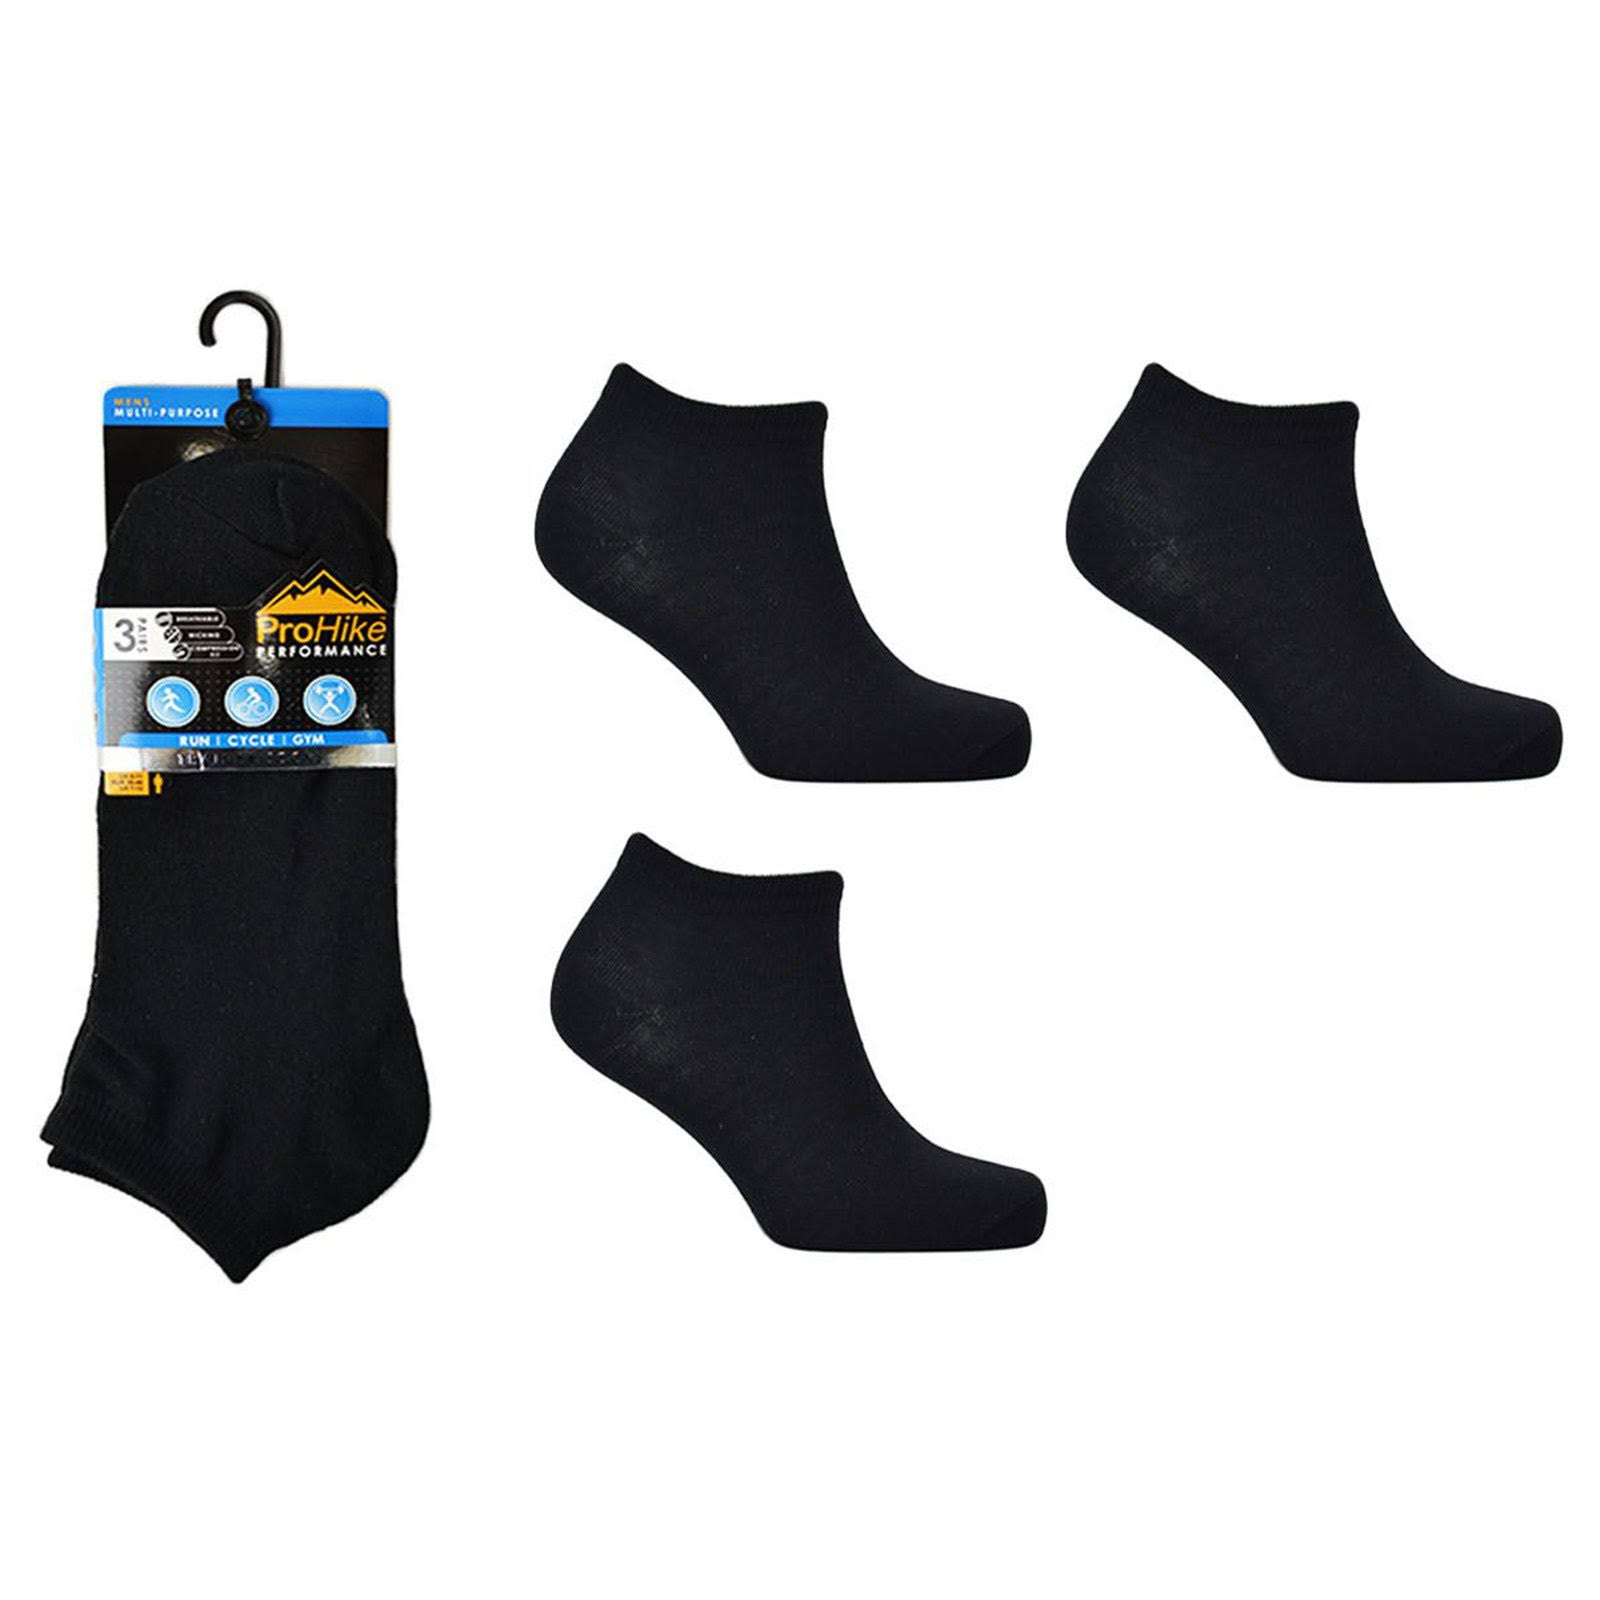 Black Socks Trainer Men's 3 Pack